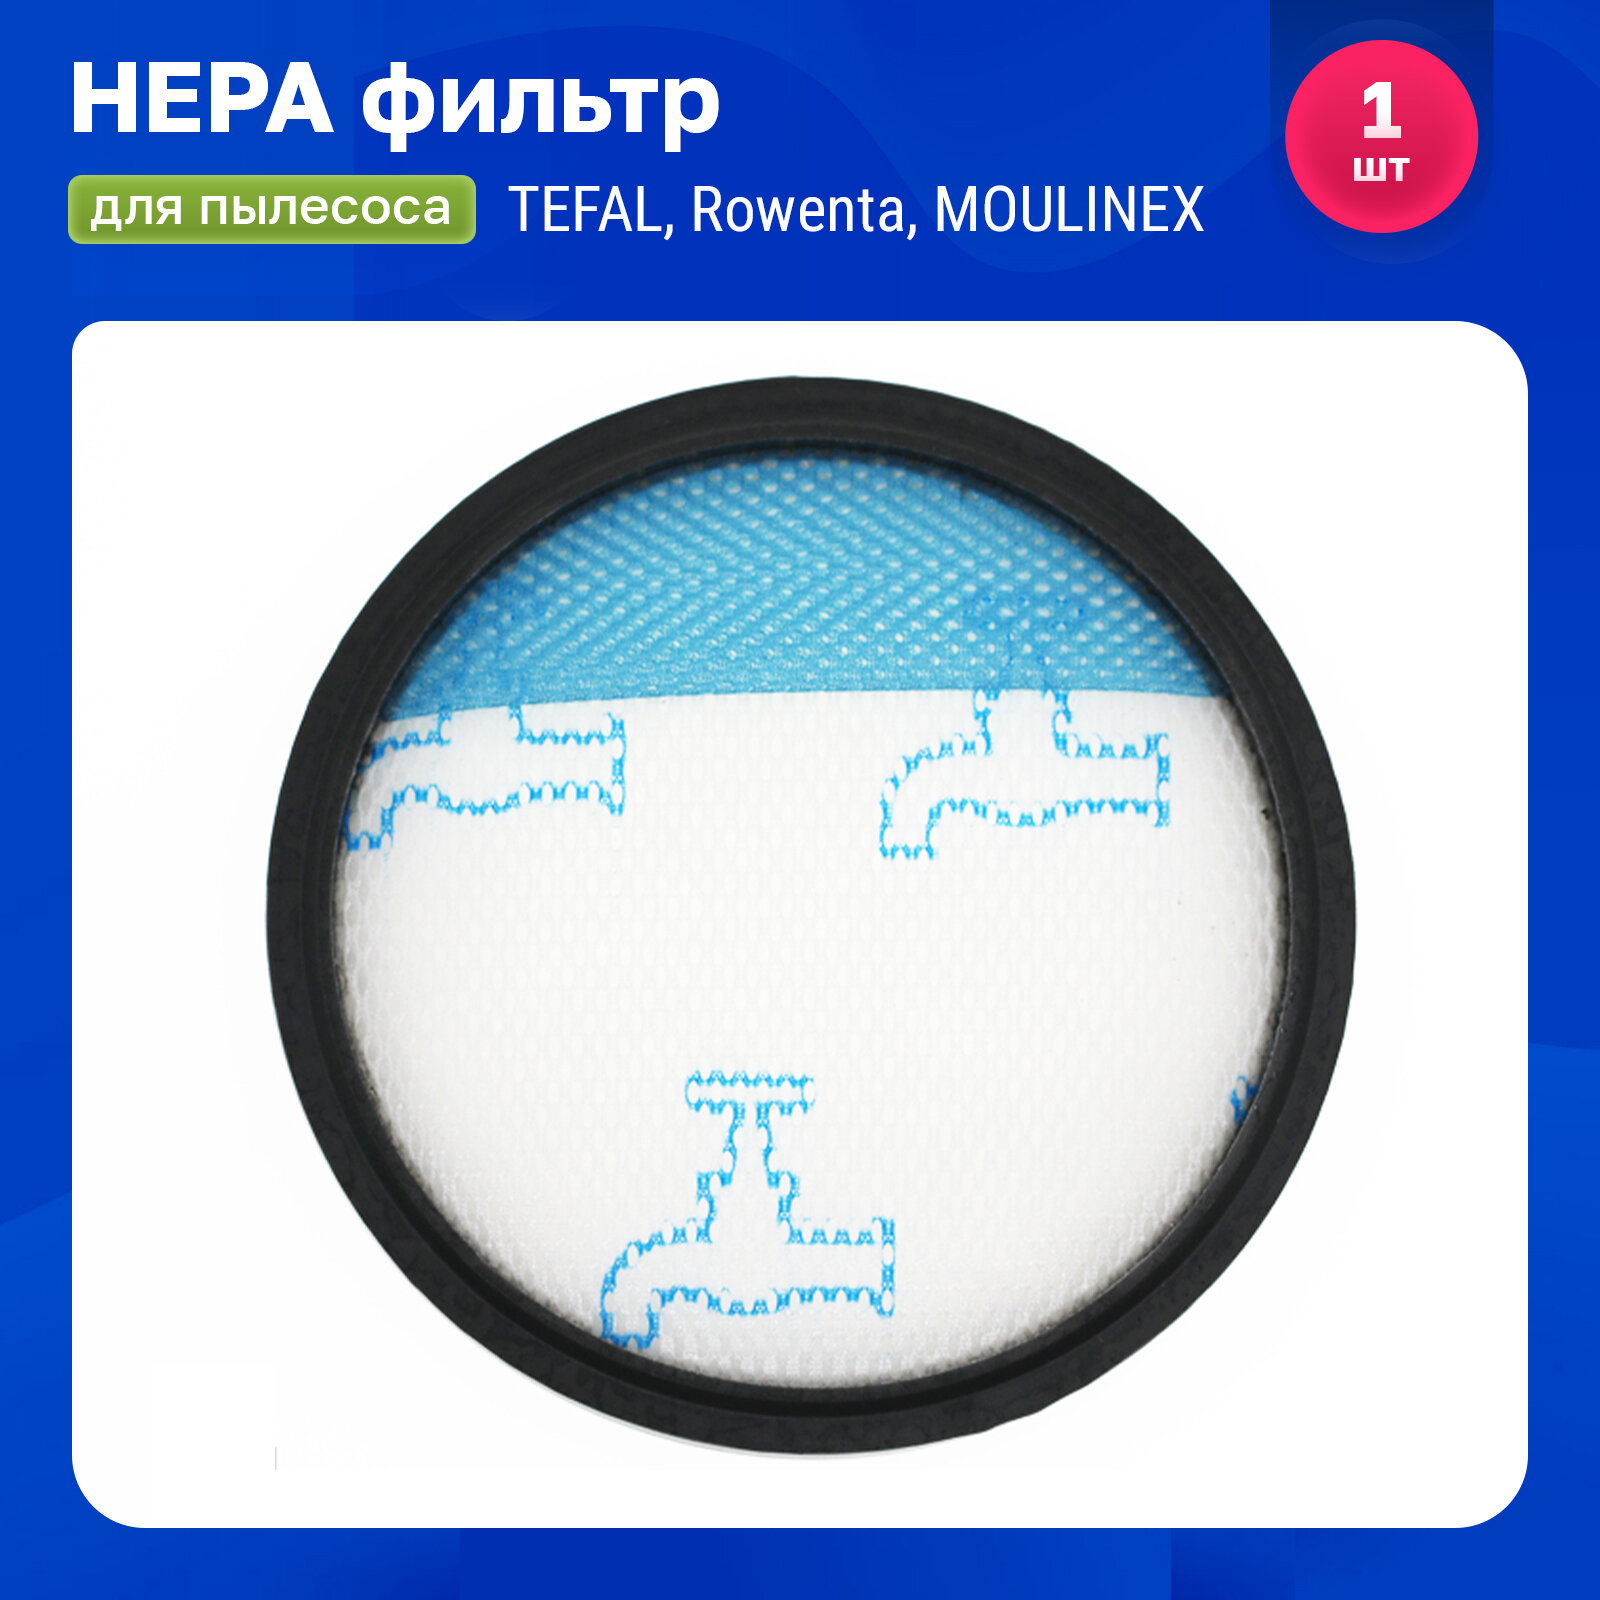 Стандартный фильтр для пылесосов TEFAL ROWENTA MOULINEX